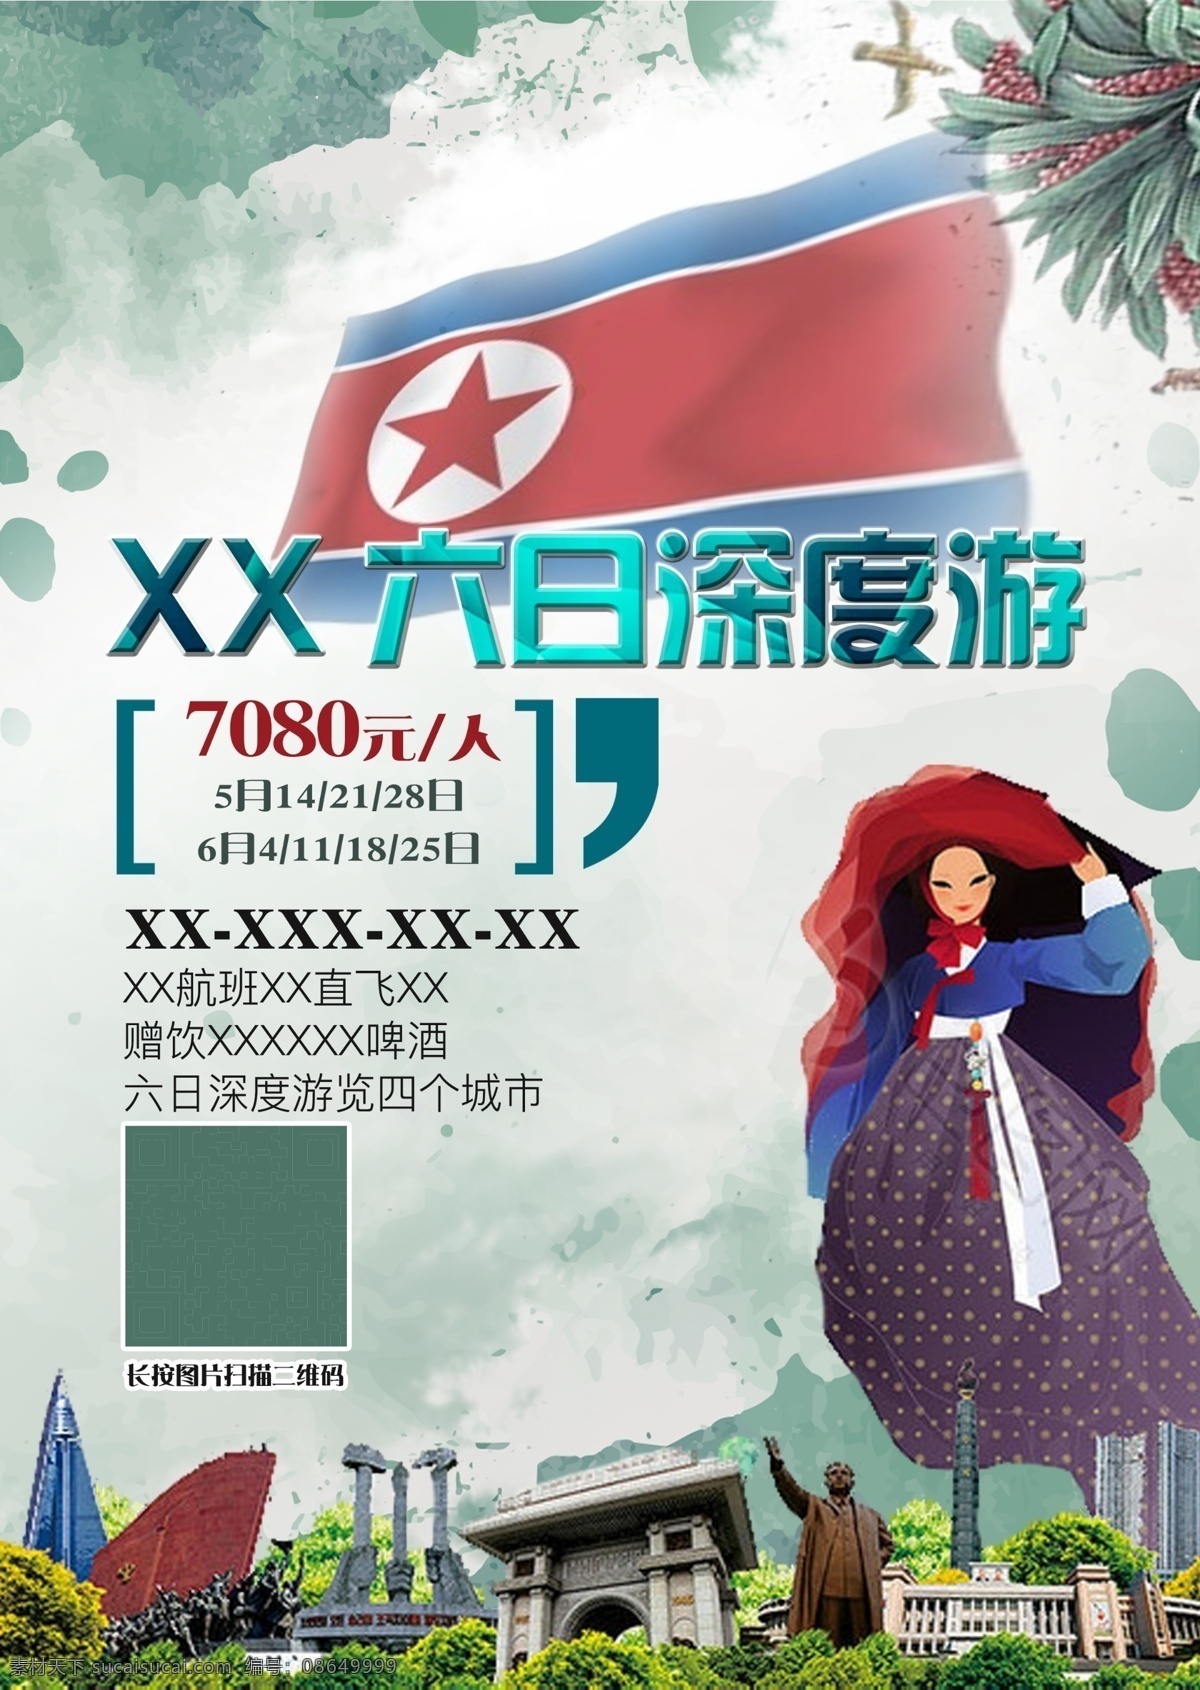 朝鲜旅游海报 朝鲜 旅游 平壤 朝鲜国旗 朝鲜半岛